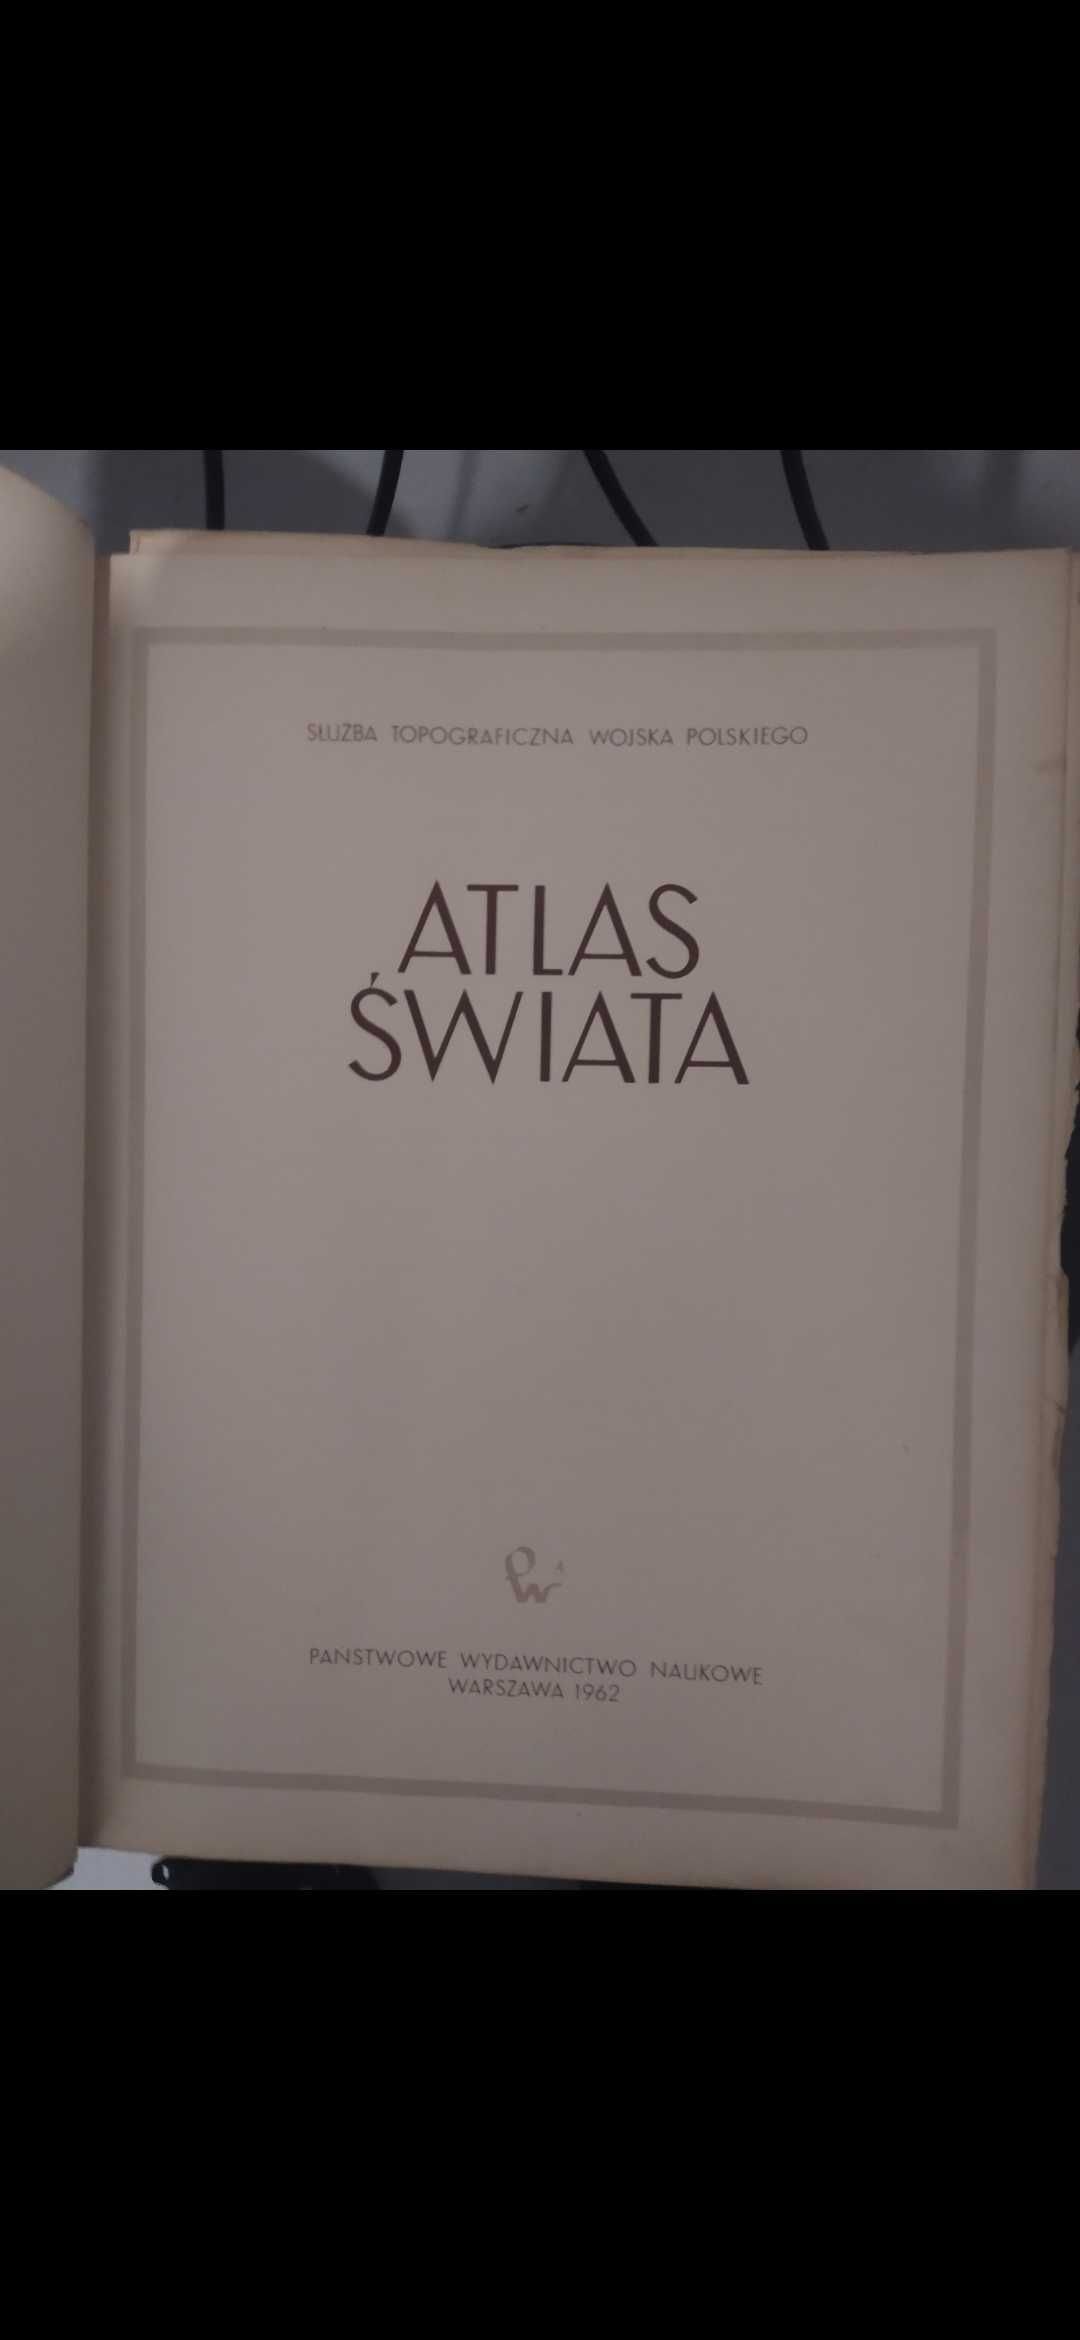 Atlas Świata Służba topograficzna Wojska Polskiego